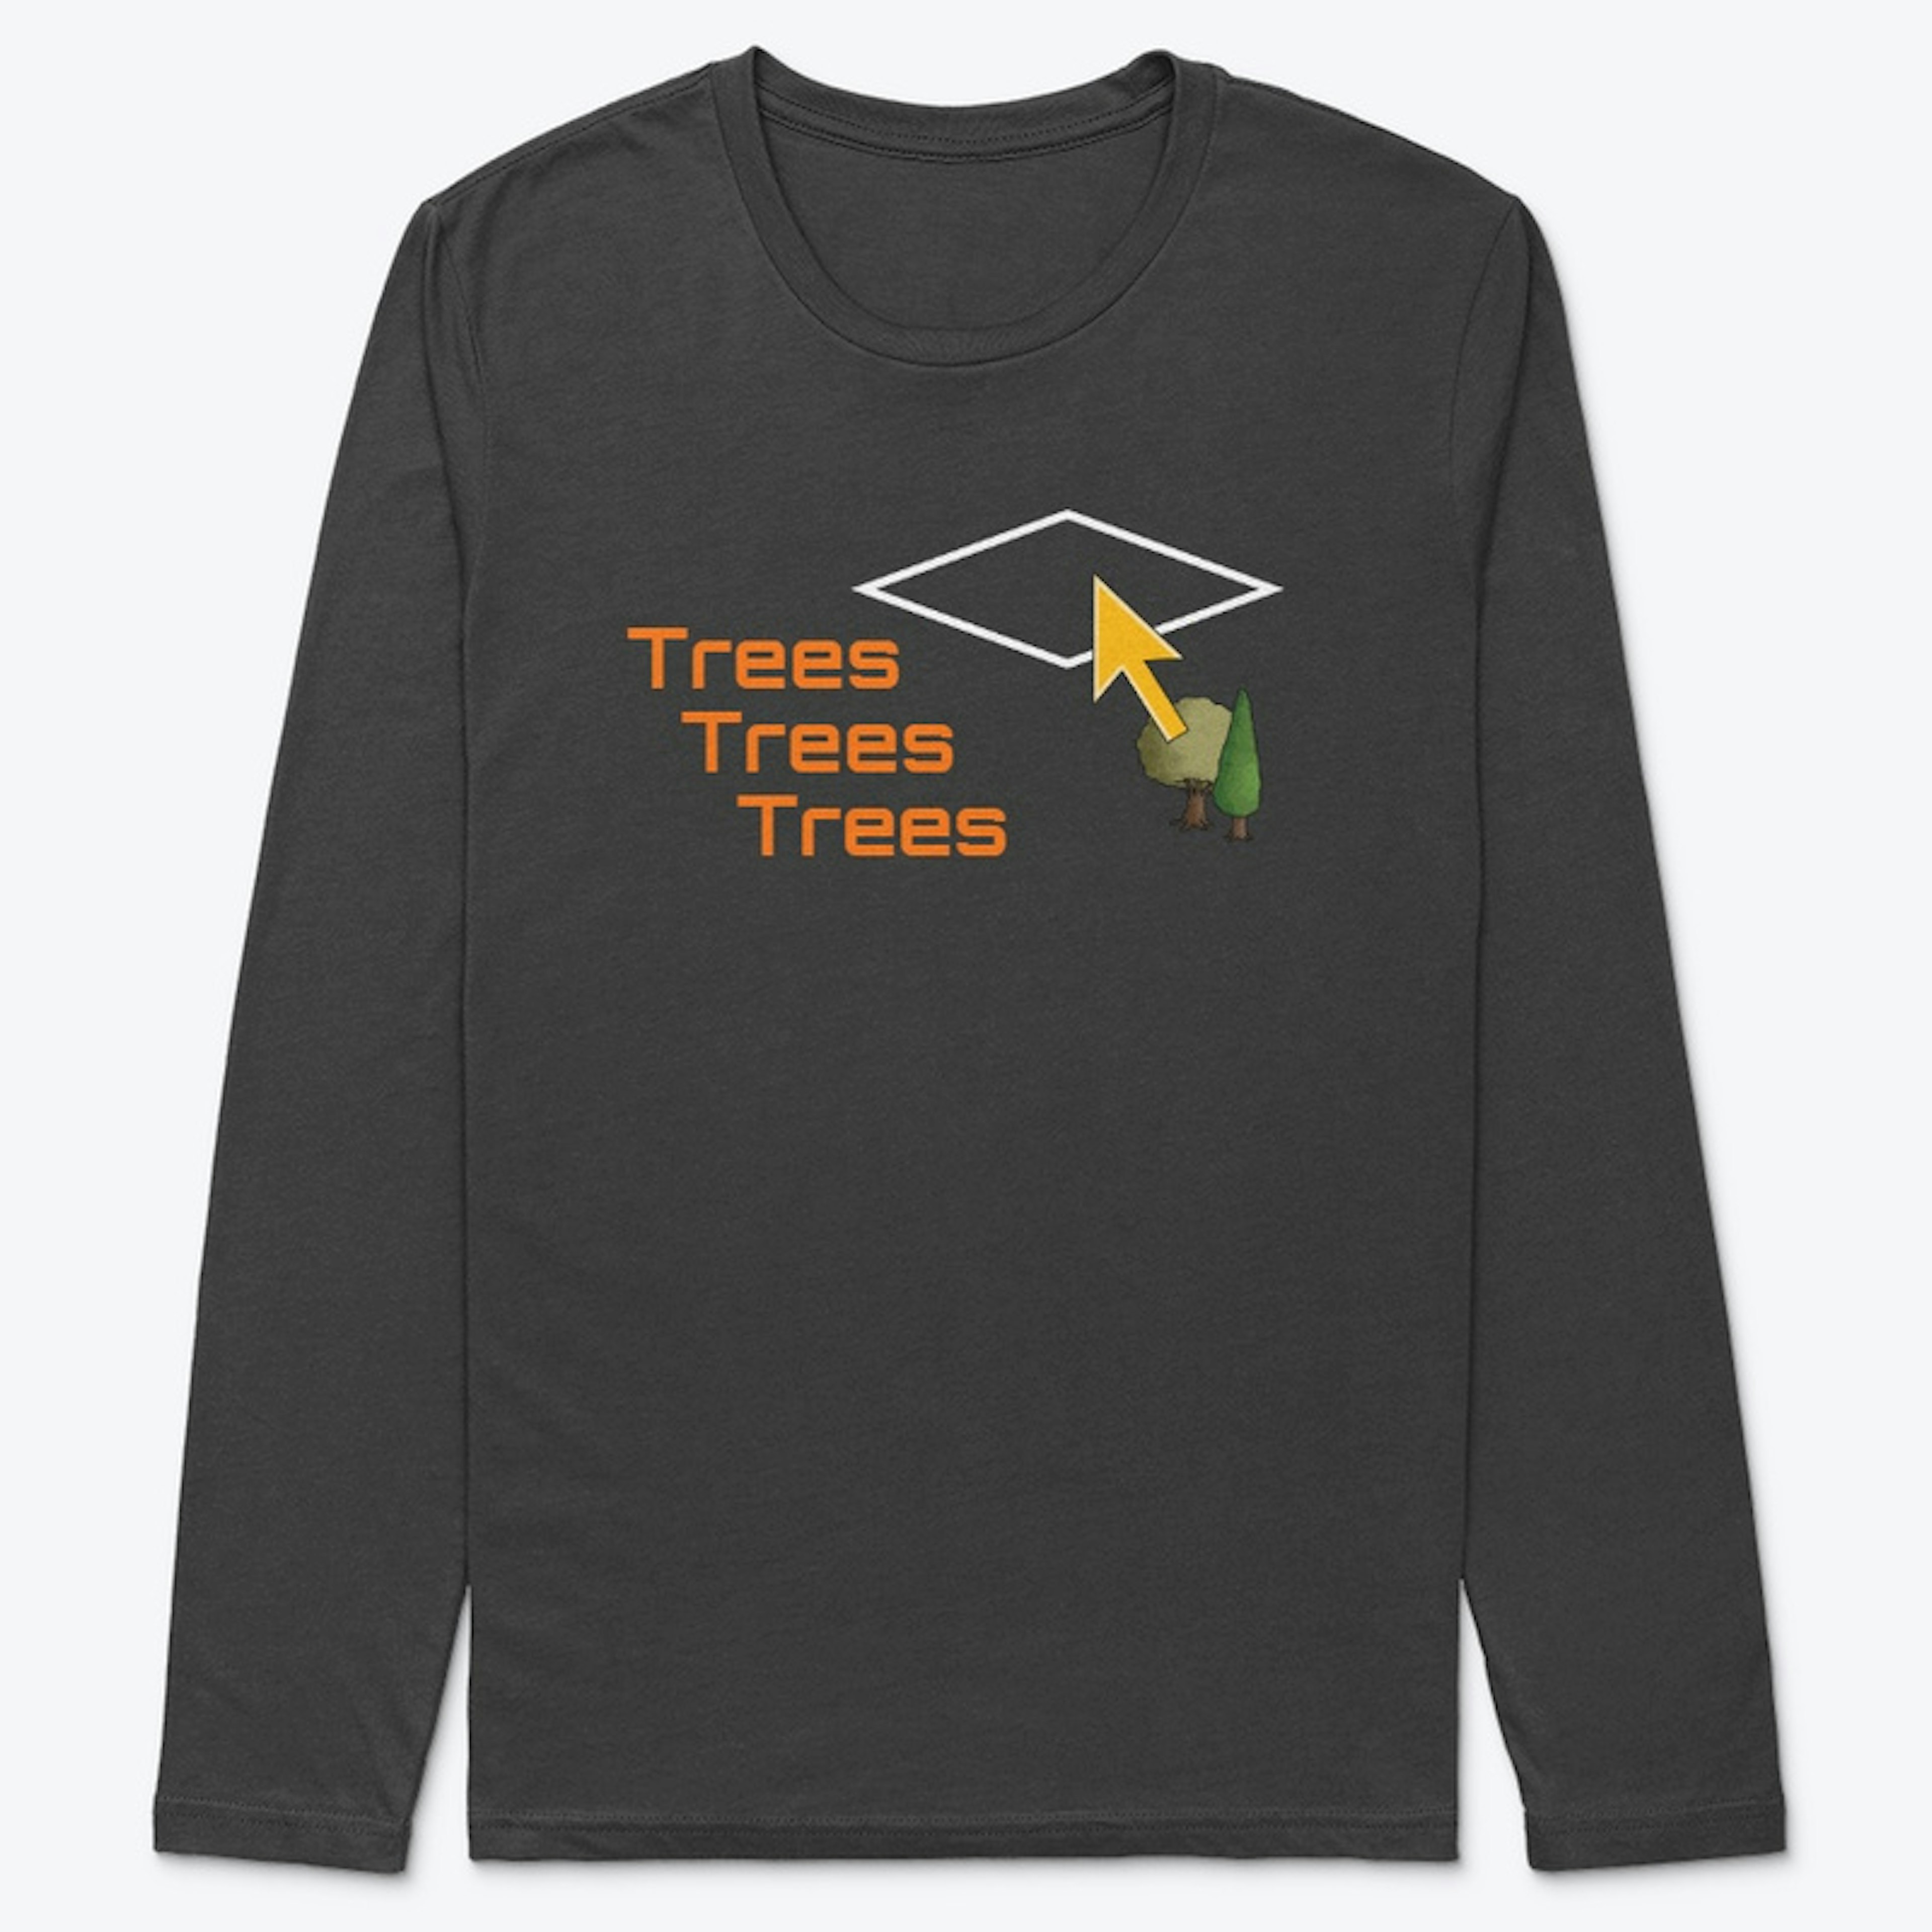 Trees Trees Trees